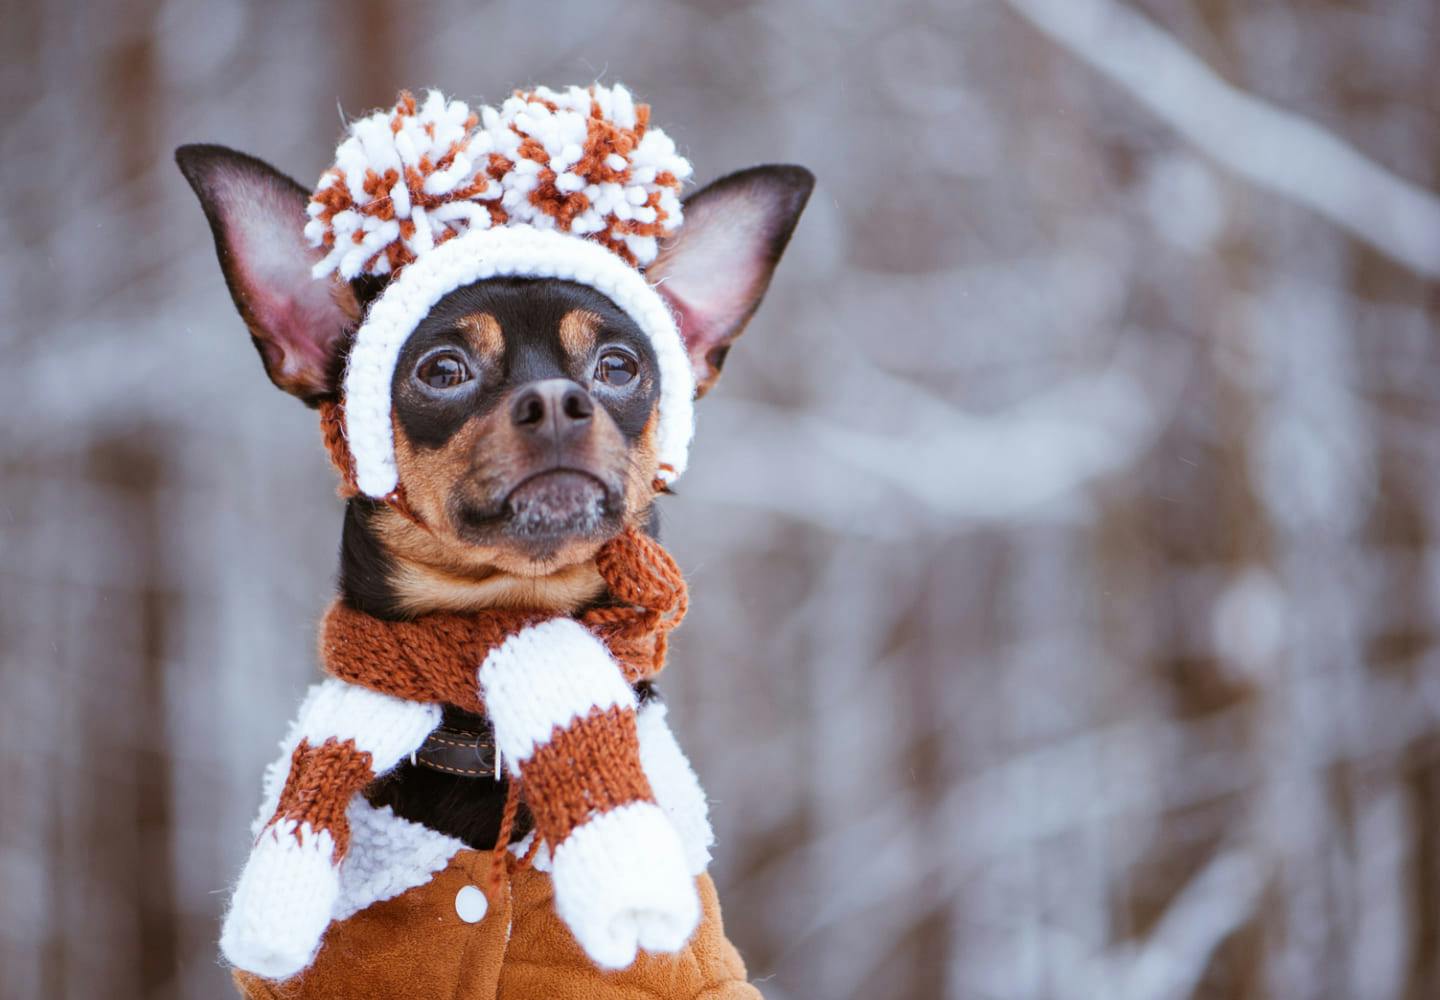 冬に犬を散歩させる際の注意点とは？寒さ対策と散歩後のケアを解説【獣医師監修】